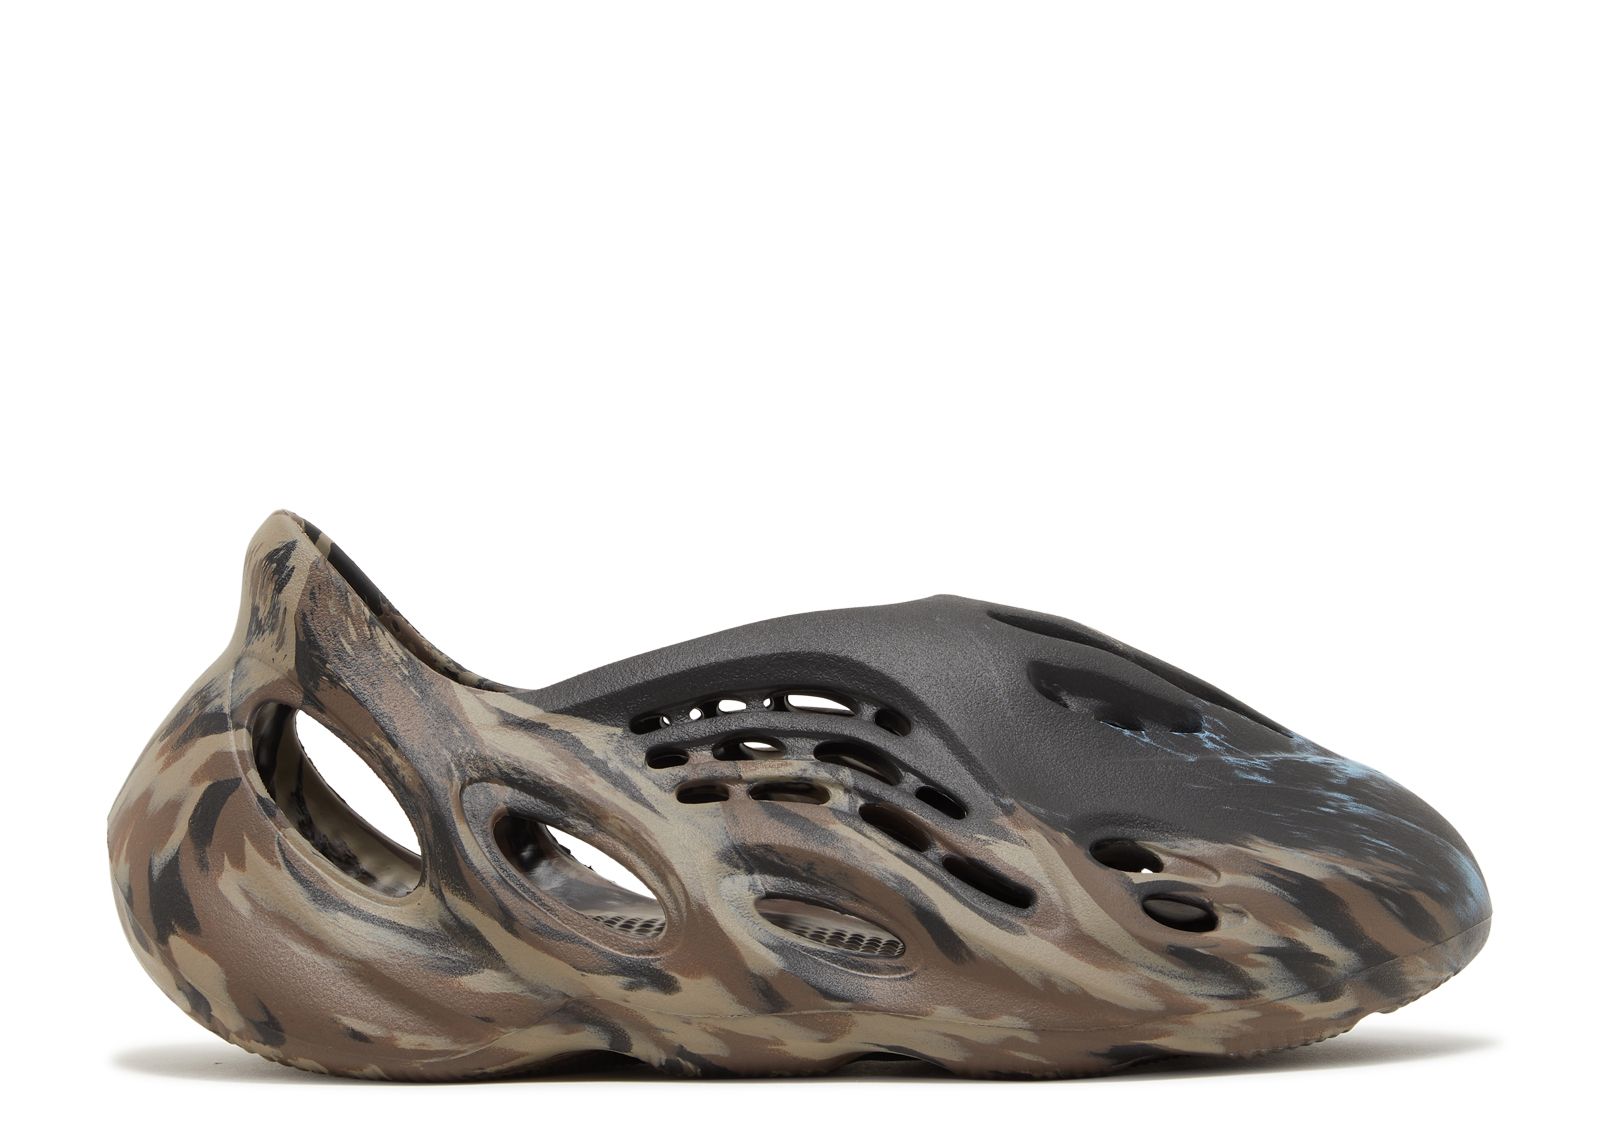 Кроссовки adidas Yeezy Foam Runner 'Mx Cinder', коричневый